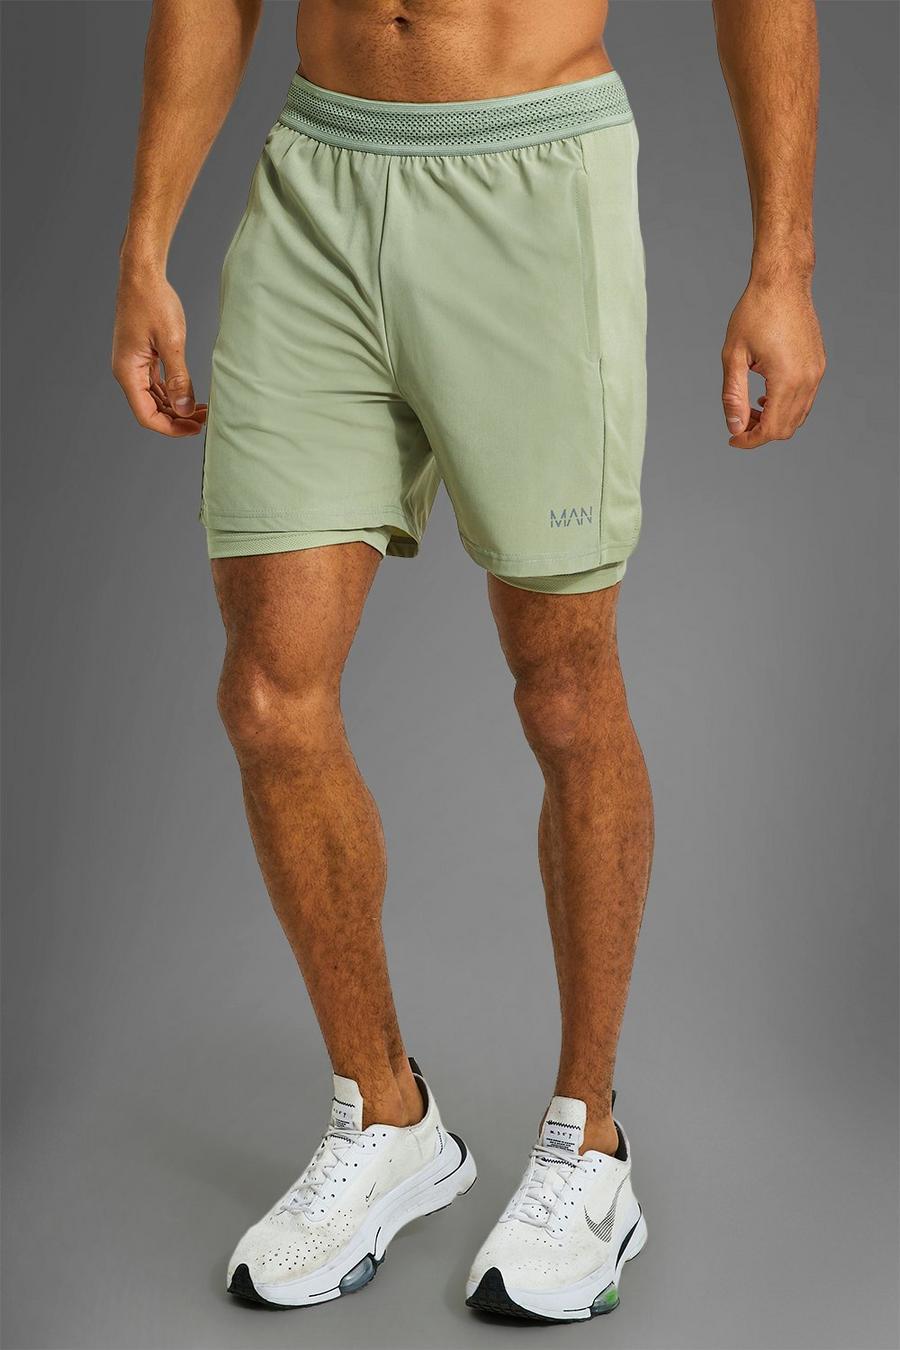 Pantalón corto MAN Active deportivo resistente 2 en 1, Olive verde image number 1